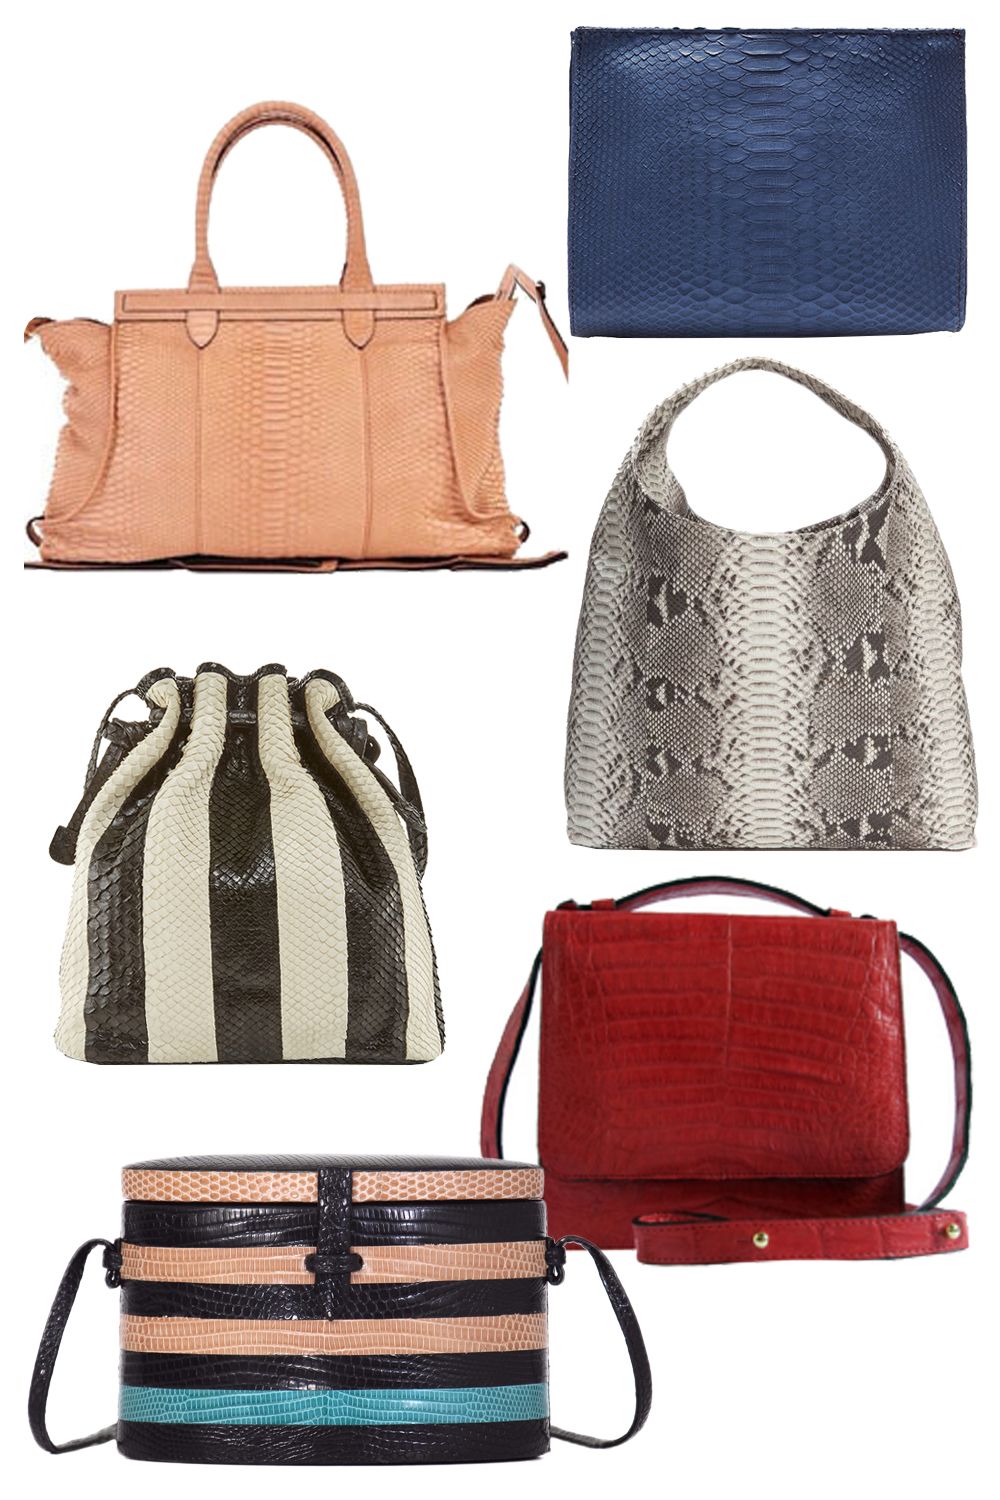 Top 10 Designer Velvet Bags For Fall 2016 - Spotted Fashion